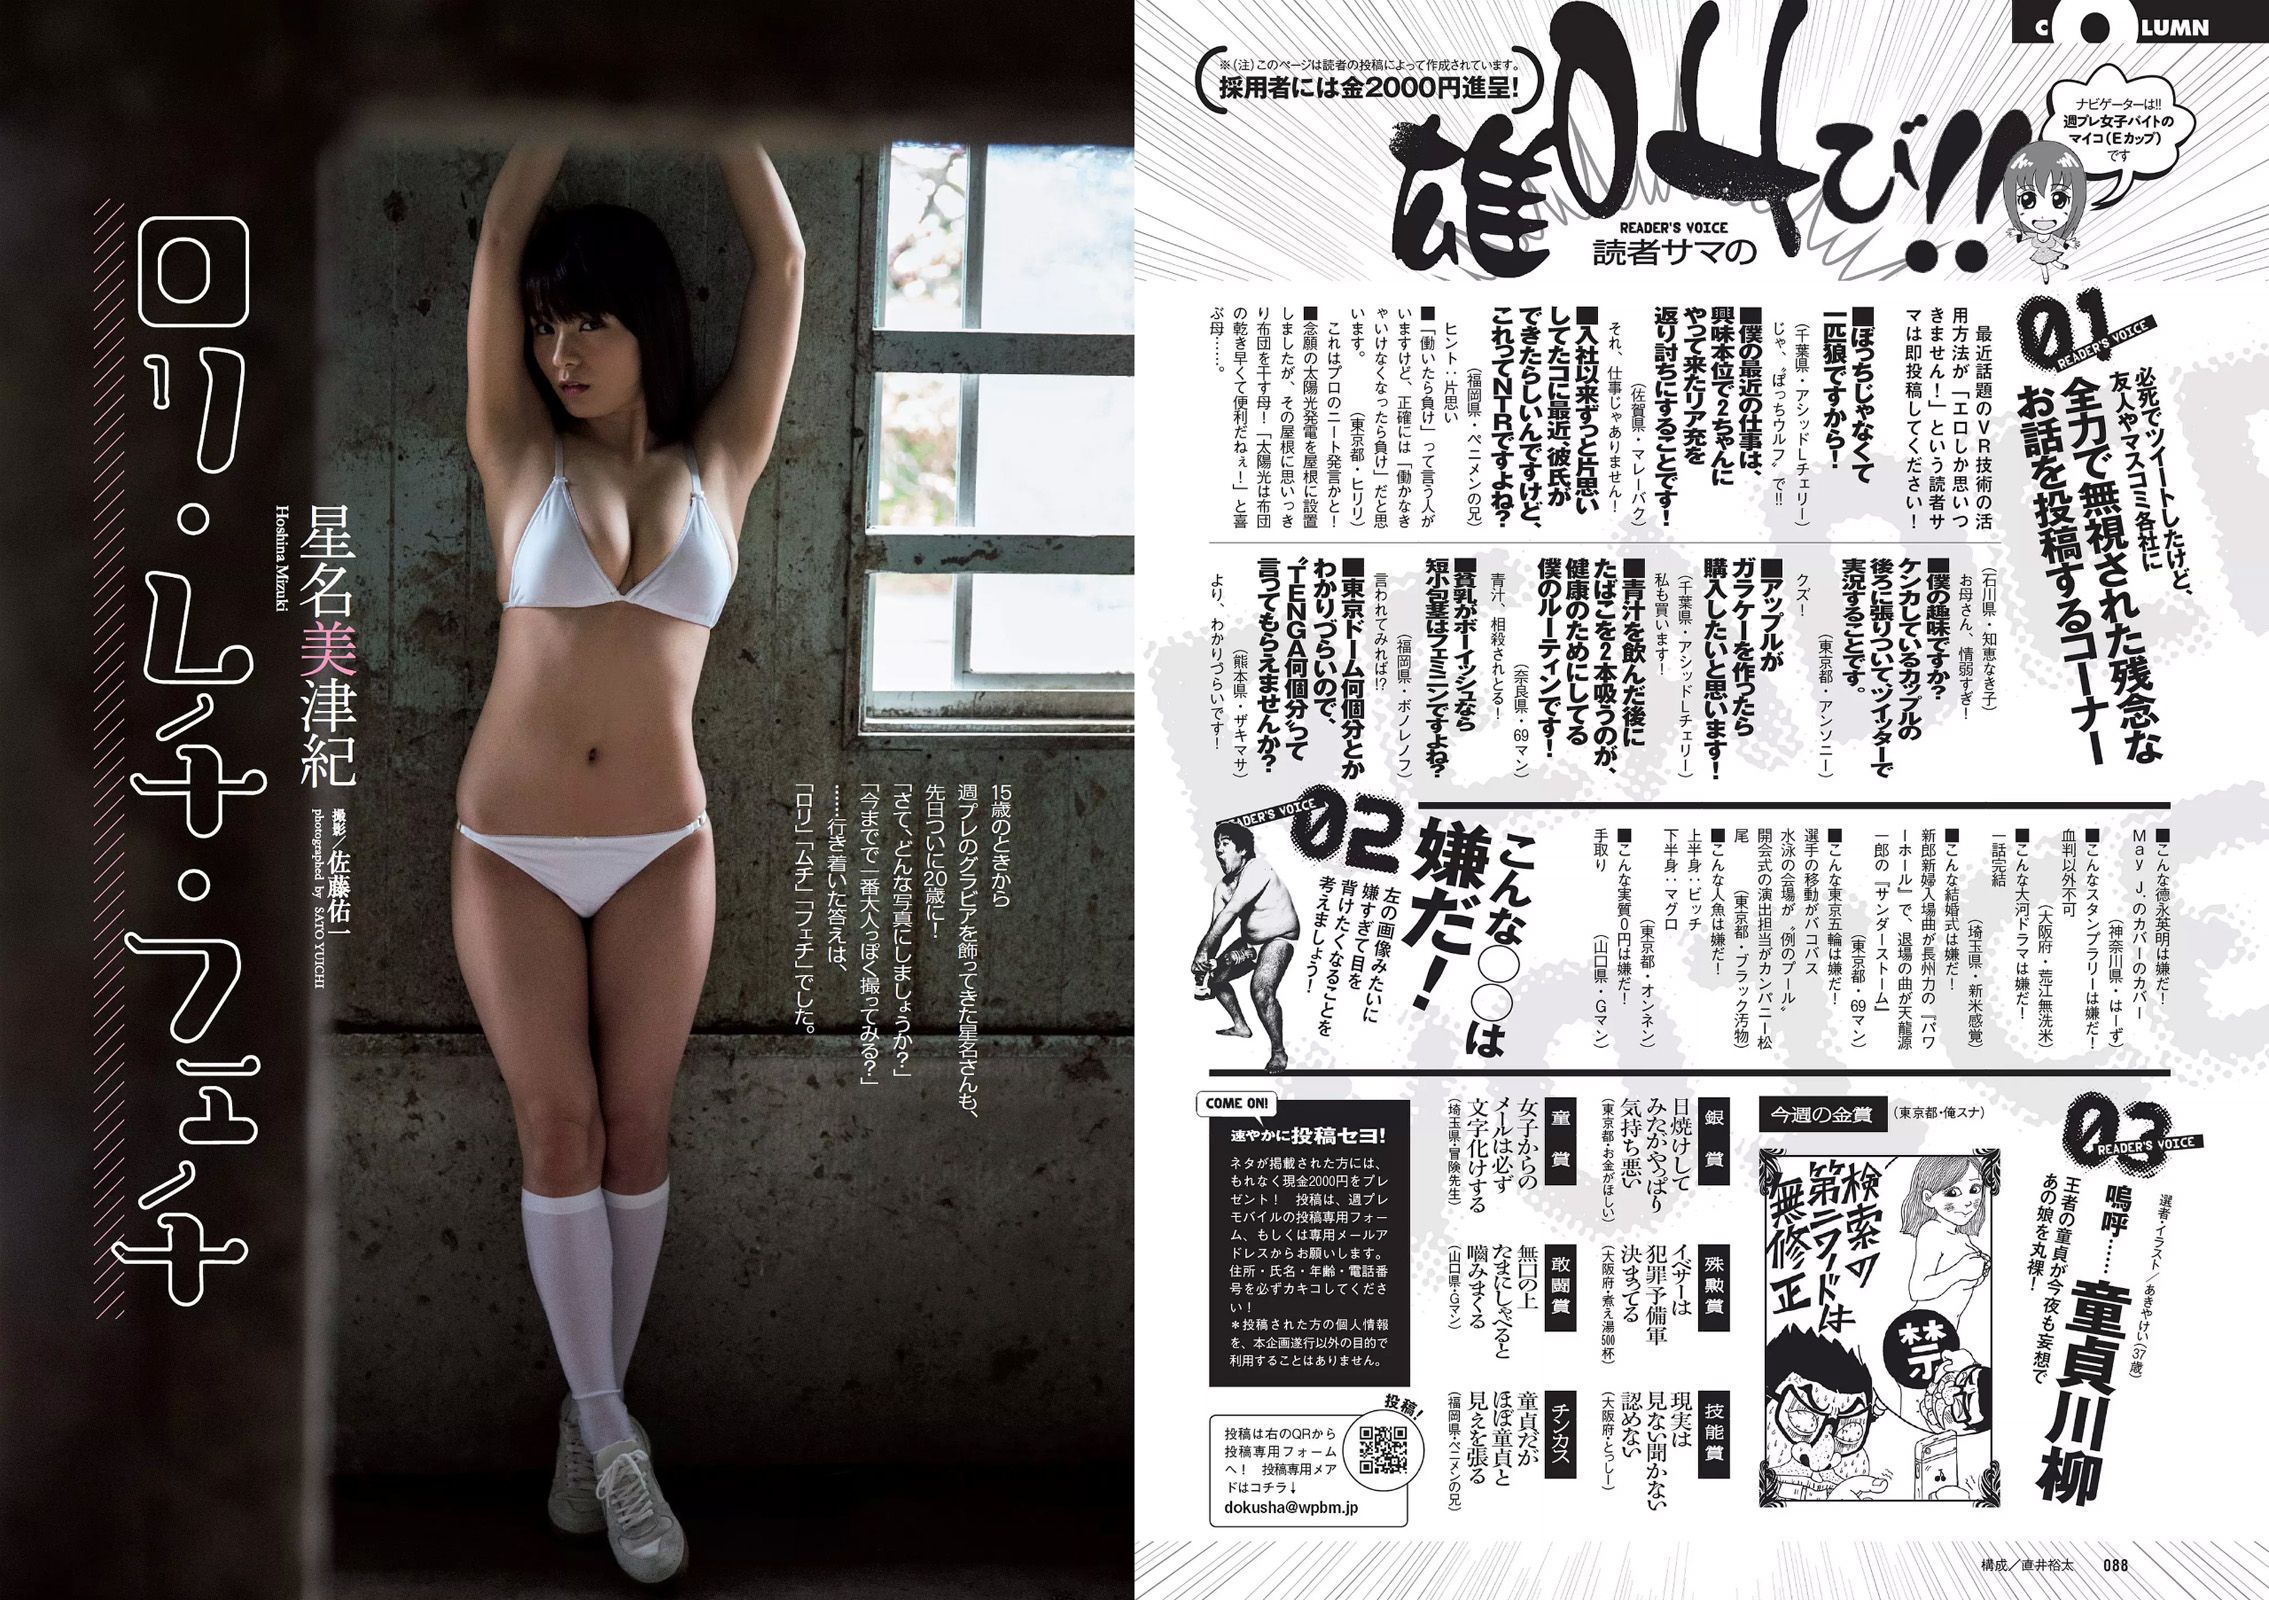 Asahina Nasa Nemoto Nagi Kumae Ryuyuki Hoshina Mitsuki Hatsukagawa Minami [Weekly Playboy] 2016 No.22 Photo Magazine Page 7 No.3d21f0